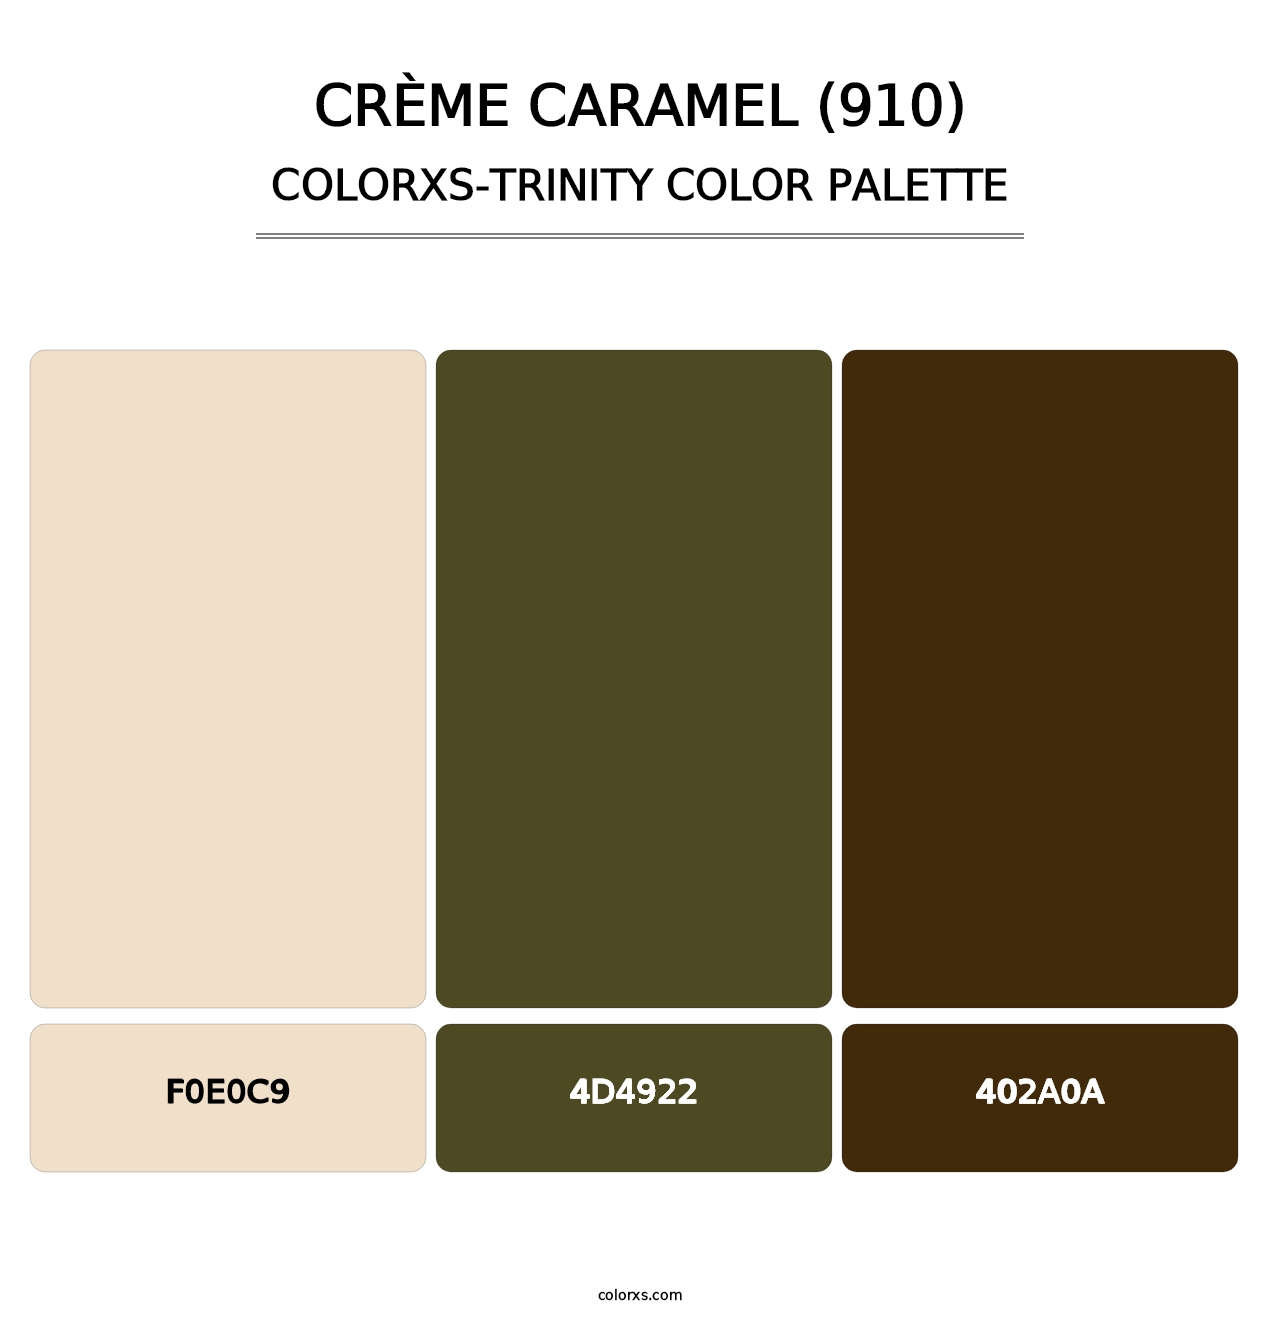 Crème Caramel (910) - Colorxs Trinity Palette